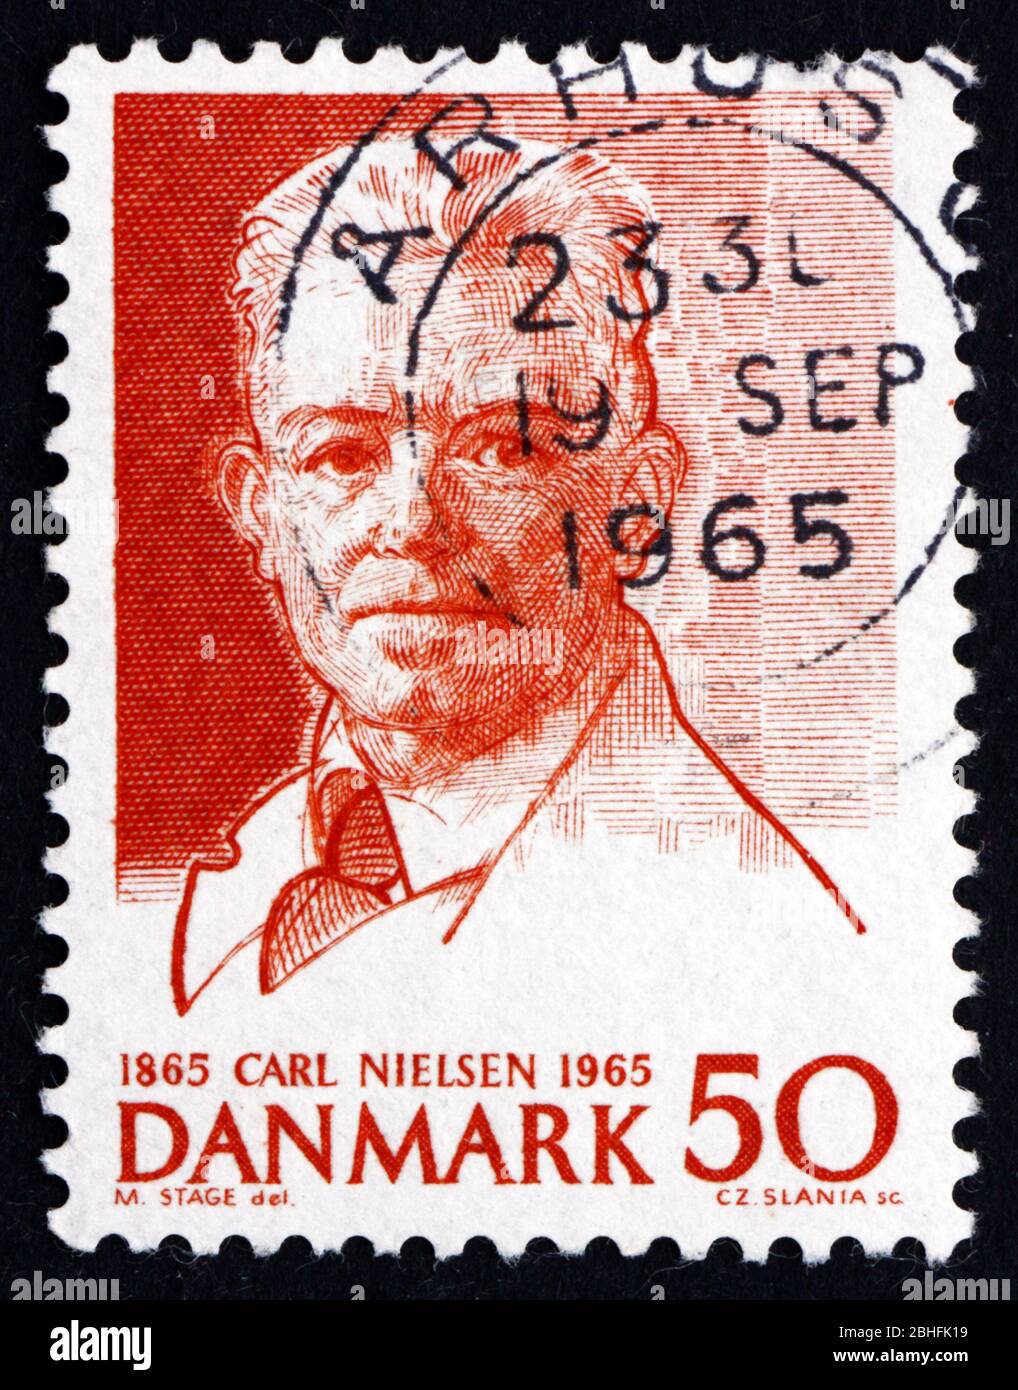 DANEMARK - VERS 1965 : un timbre imprimé au Danemark montre Carl Nielsen, compositeur, vers 1965 Banque D'Images